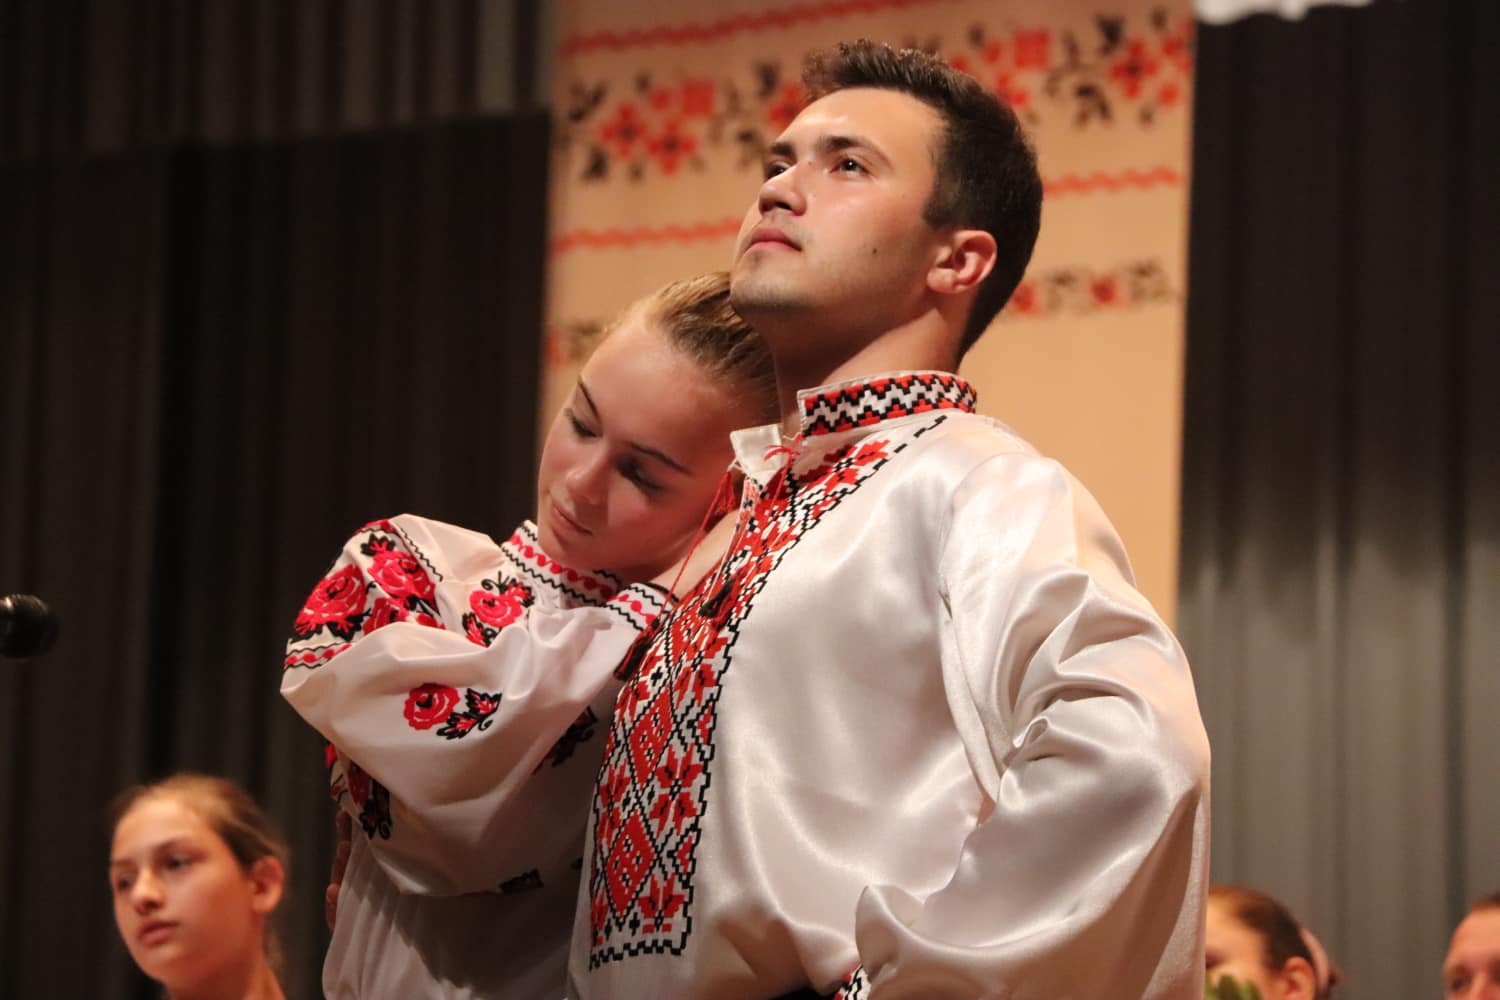 Коллективы из 3-х областей вместе спели песню покойного руководителя чернобаевской «Зари»